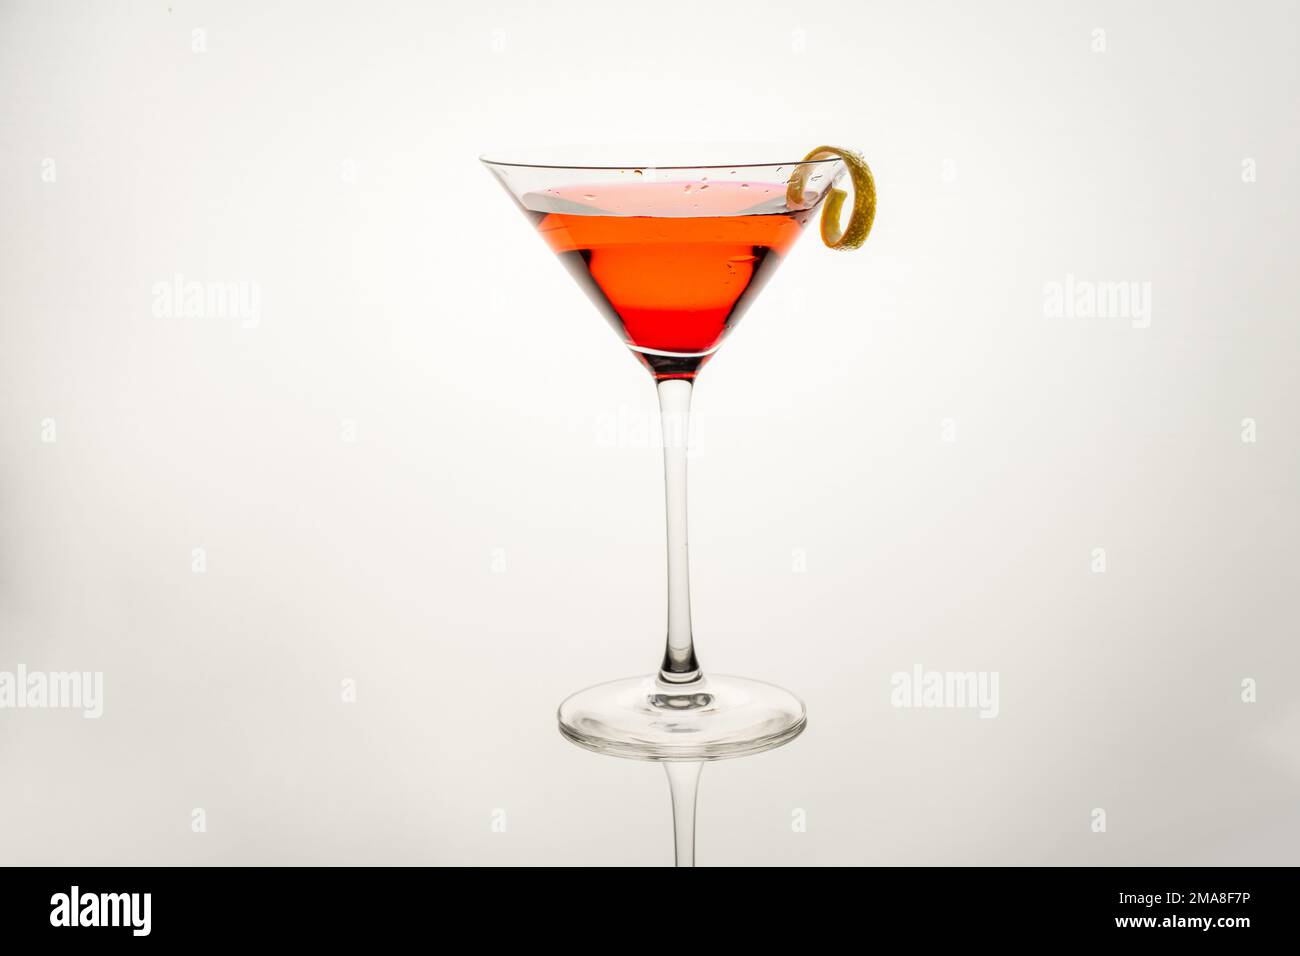 Verre à martini avec cocktail de dame rose, touche citron isolée sur fond blanc Banque D'Images